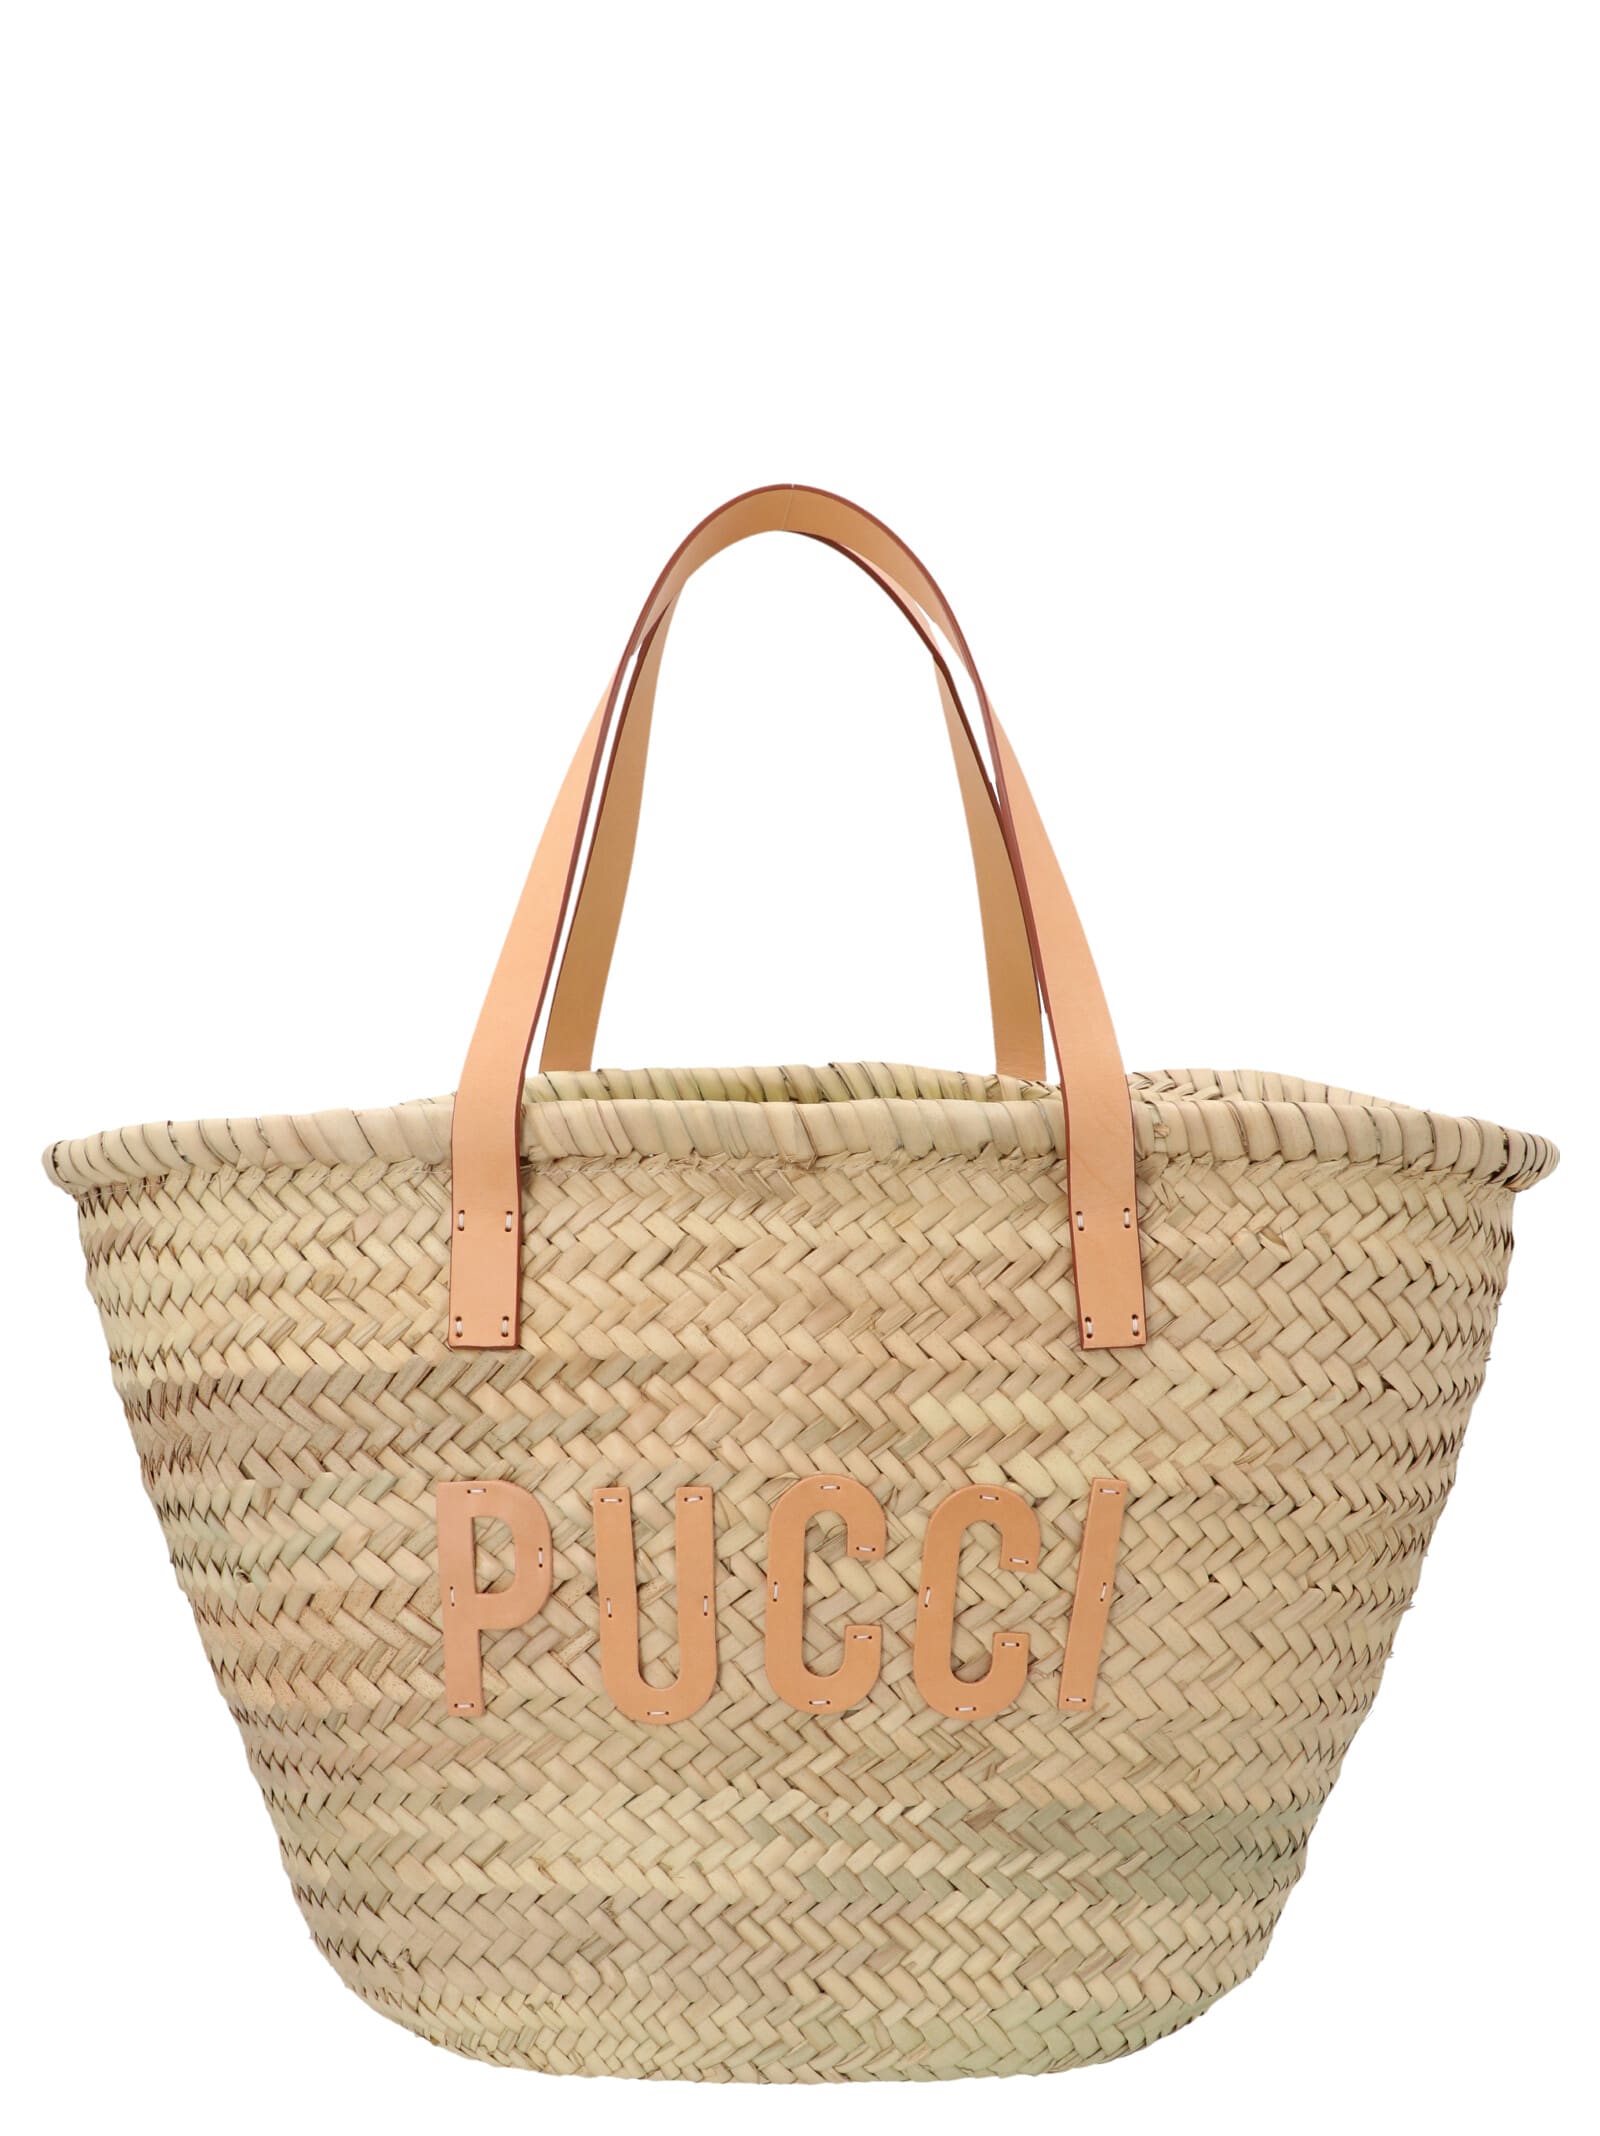 Emilio Pucci Logo Handbag